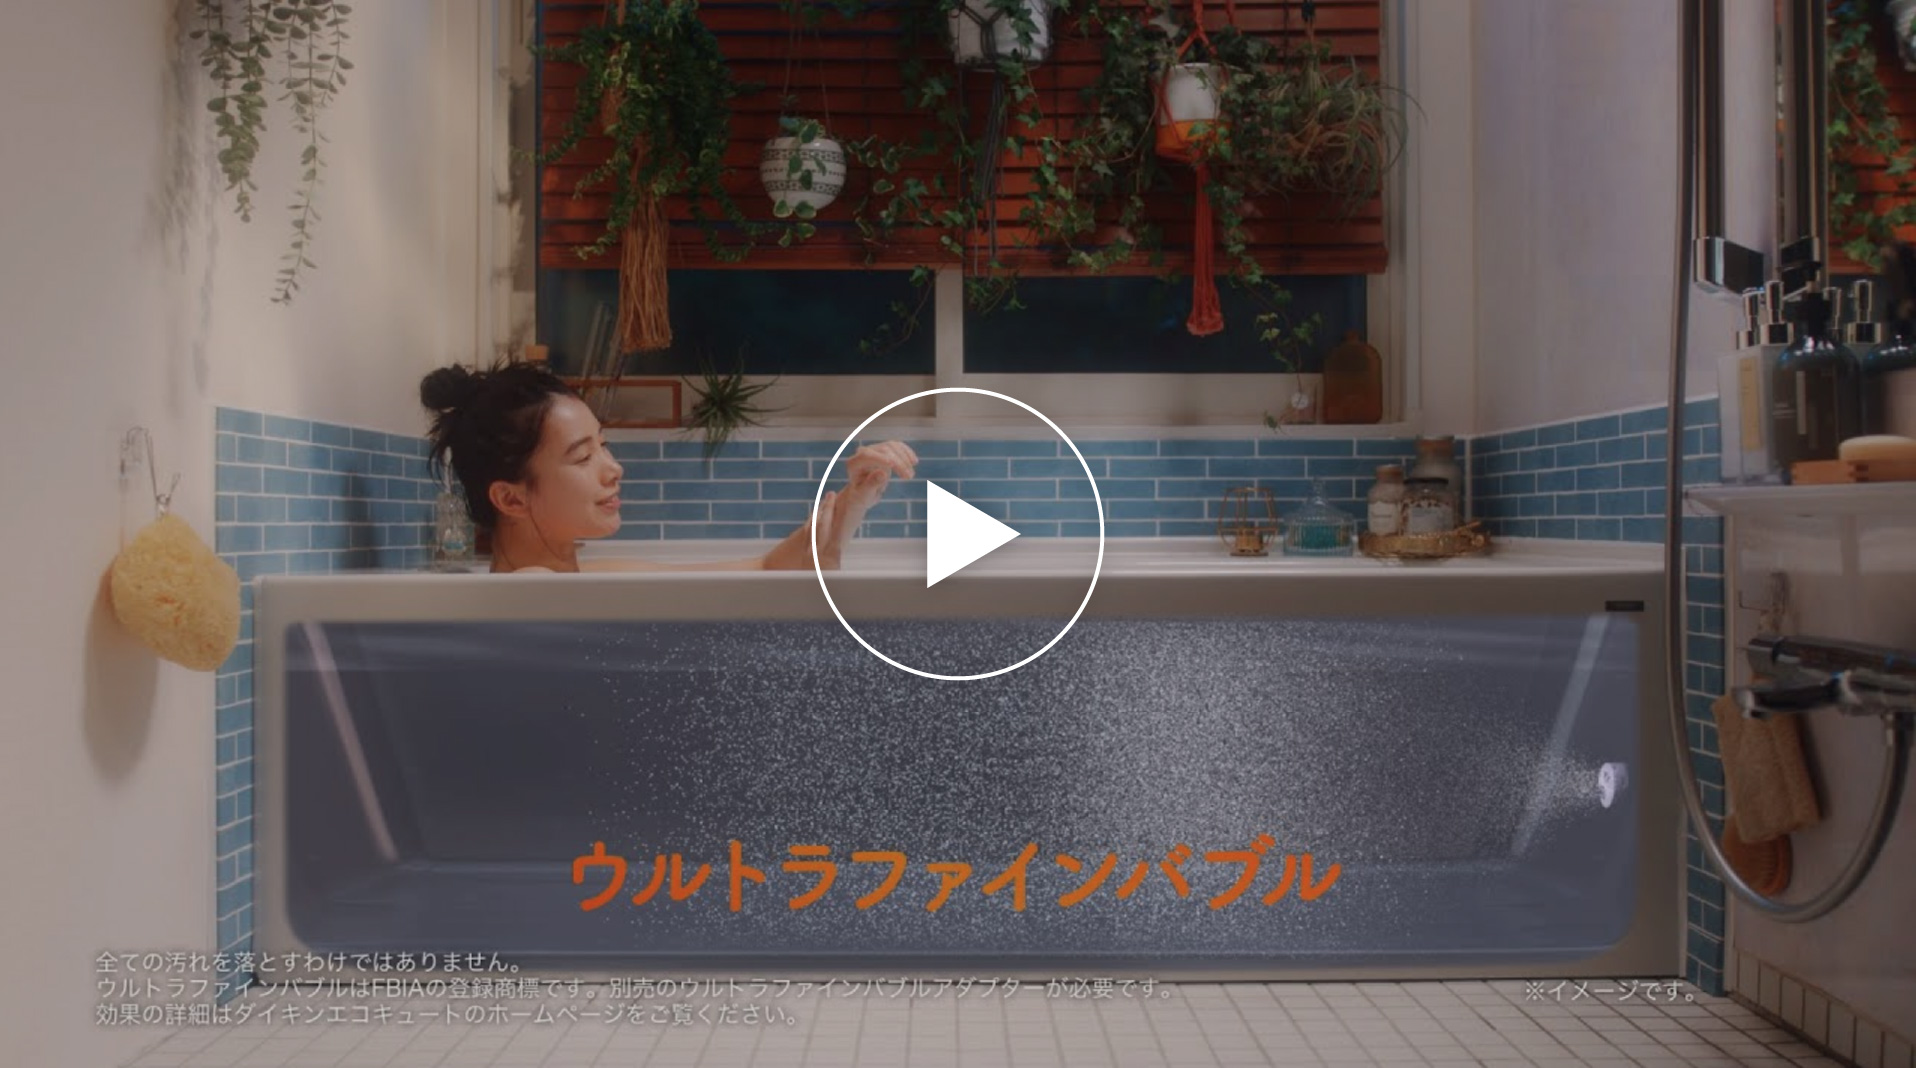 エコキュート「お風呂でOFFろう」 60秒篇【ダイキン】